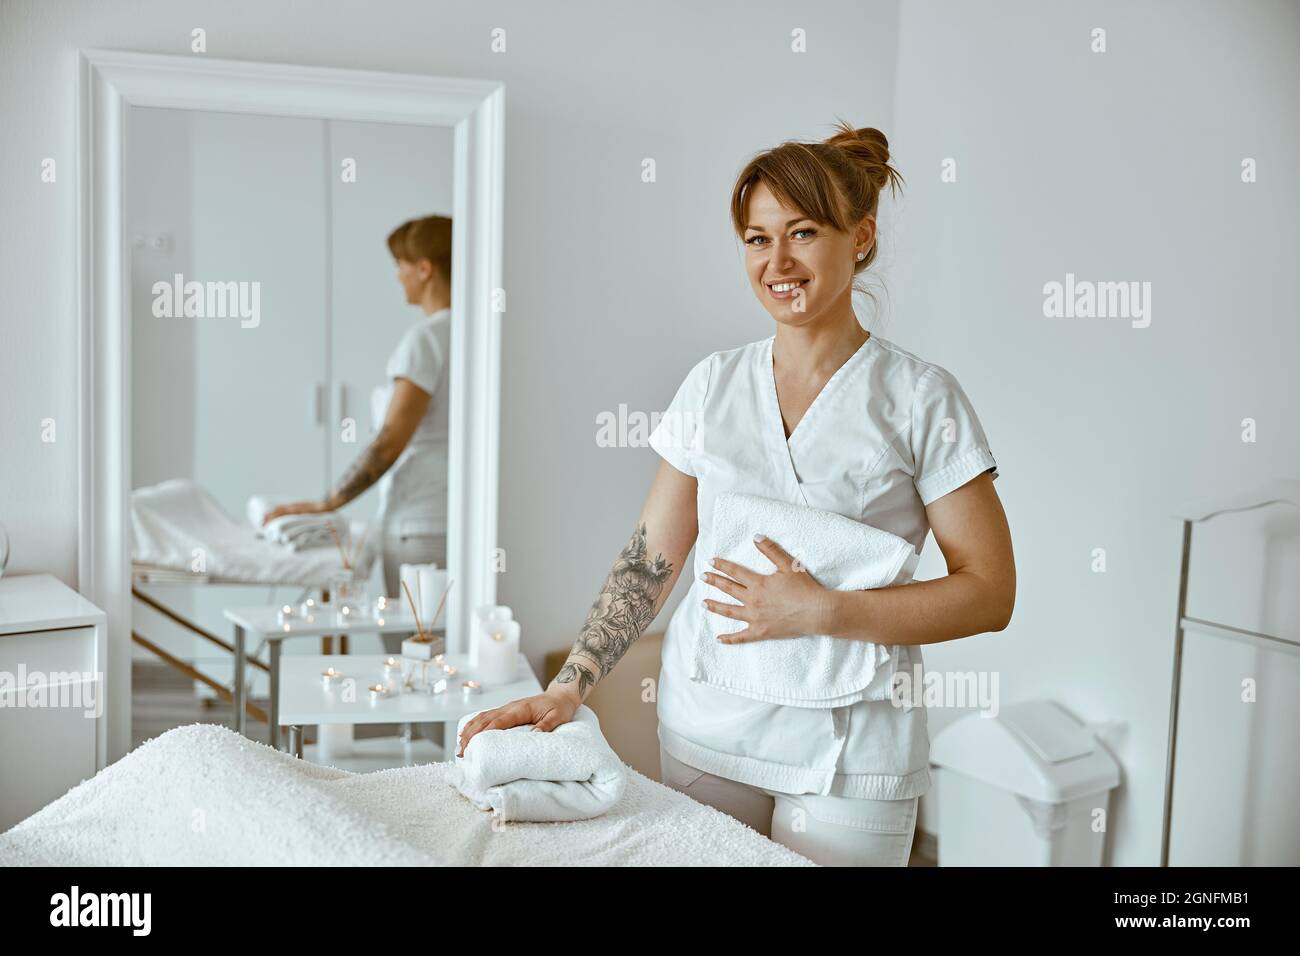 belle femme caucasienne heureuse pose dans blanc minimaliste moderne salon de traitement Banque D'Images